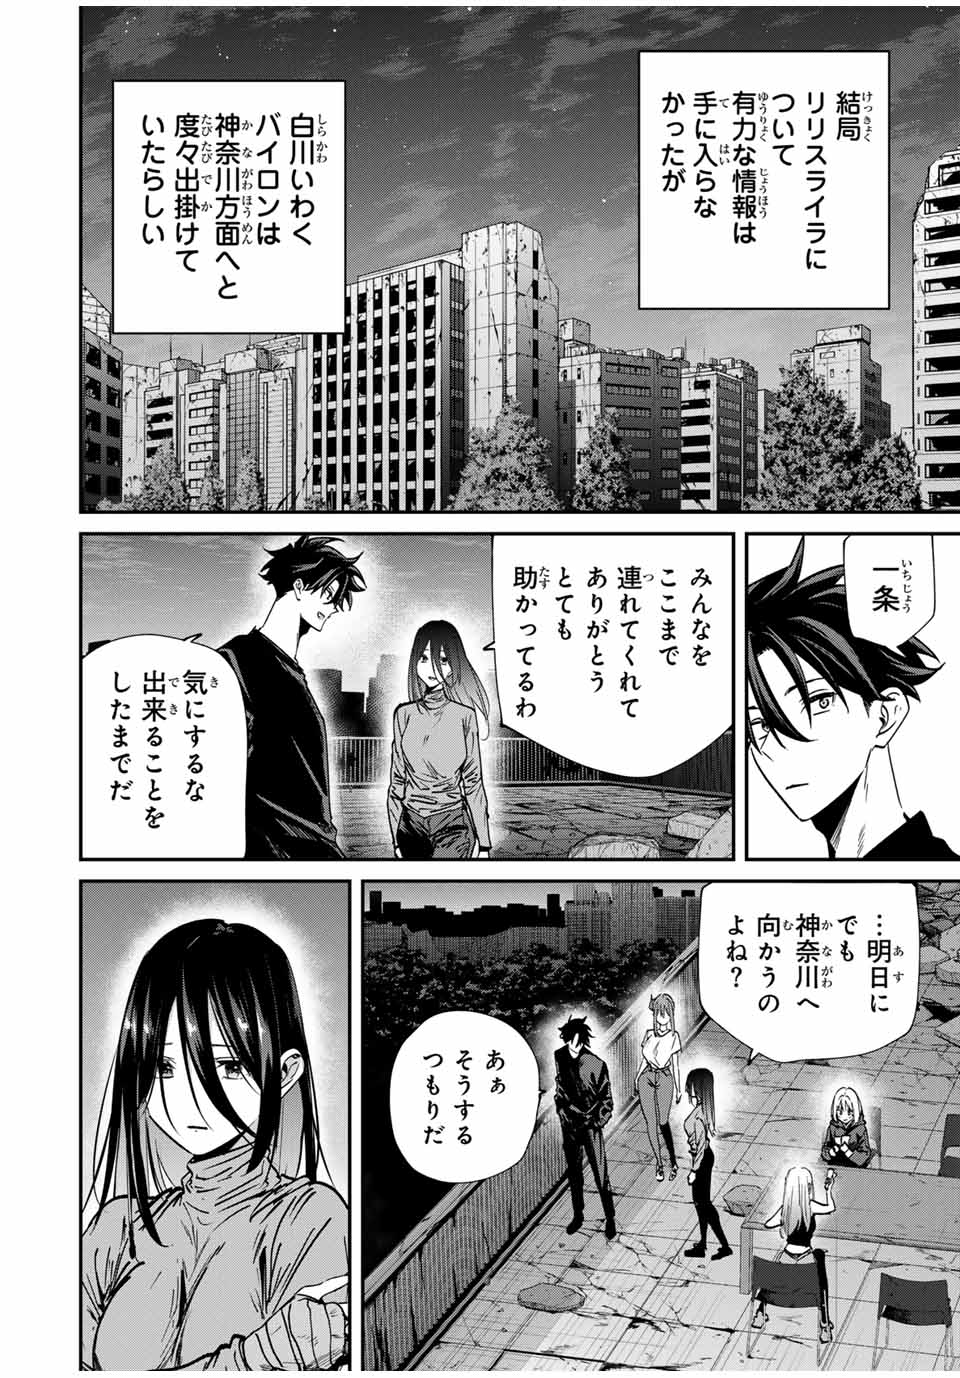 Kono Sekai ga Izure Horobu Koto wo, Ore dake ga Shitte Iru - Chapter 69 - Page 4